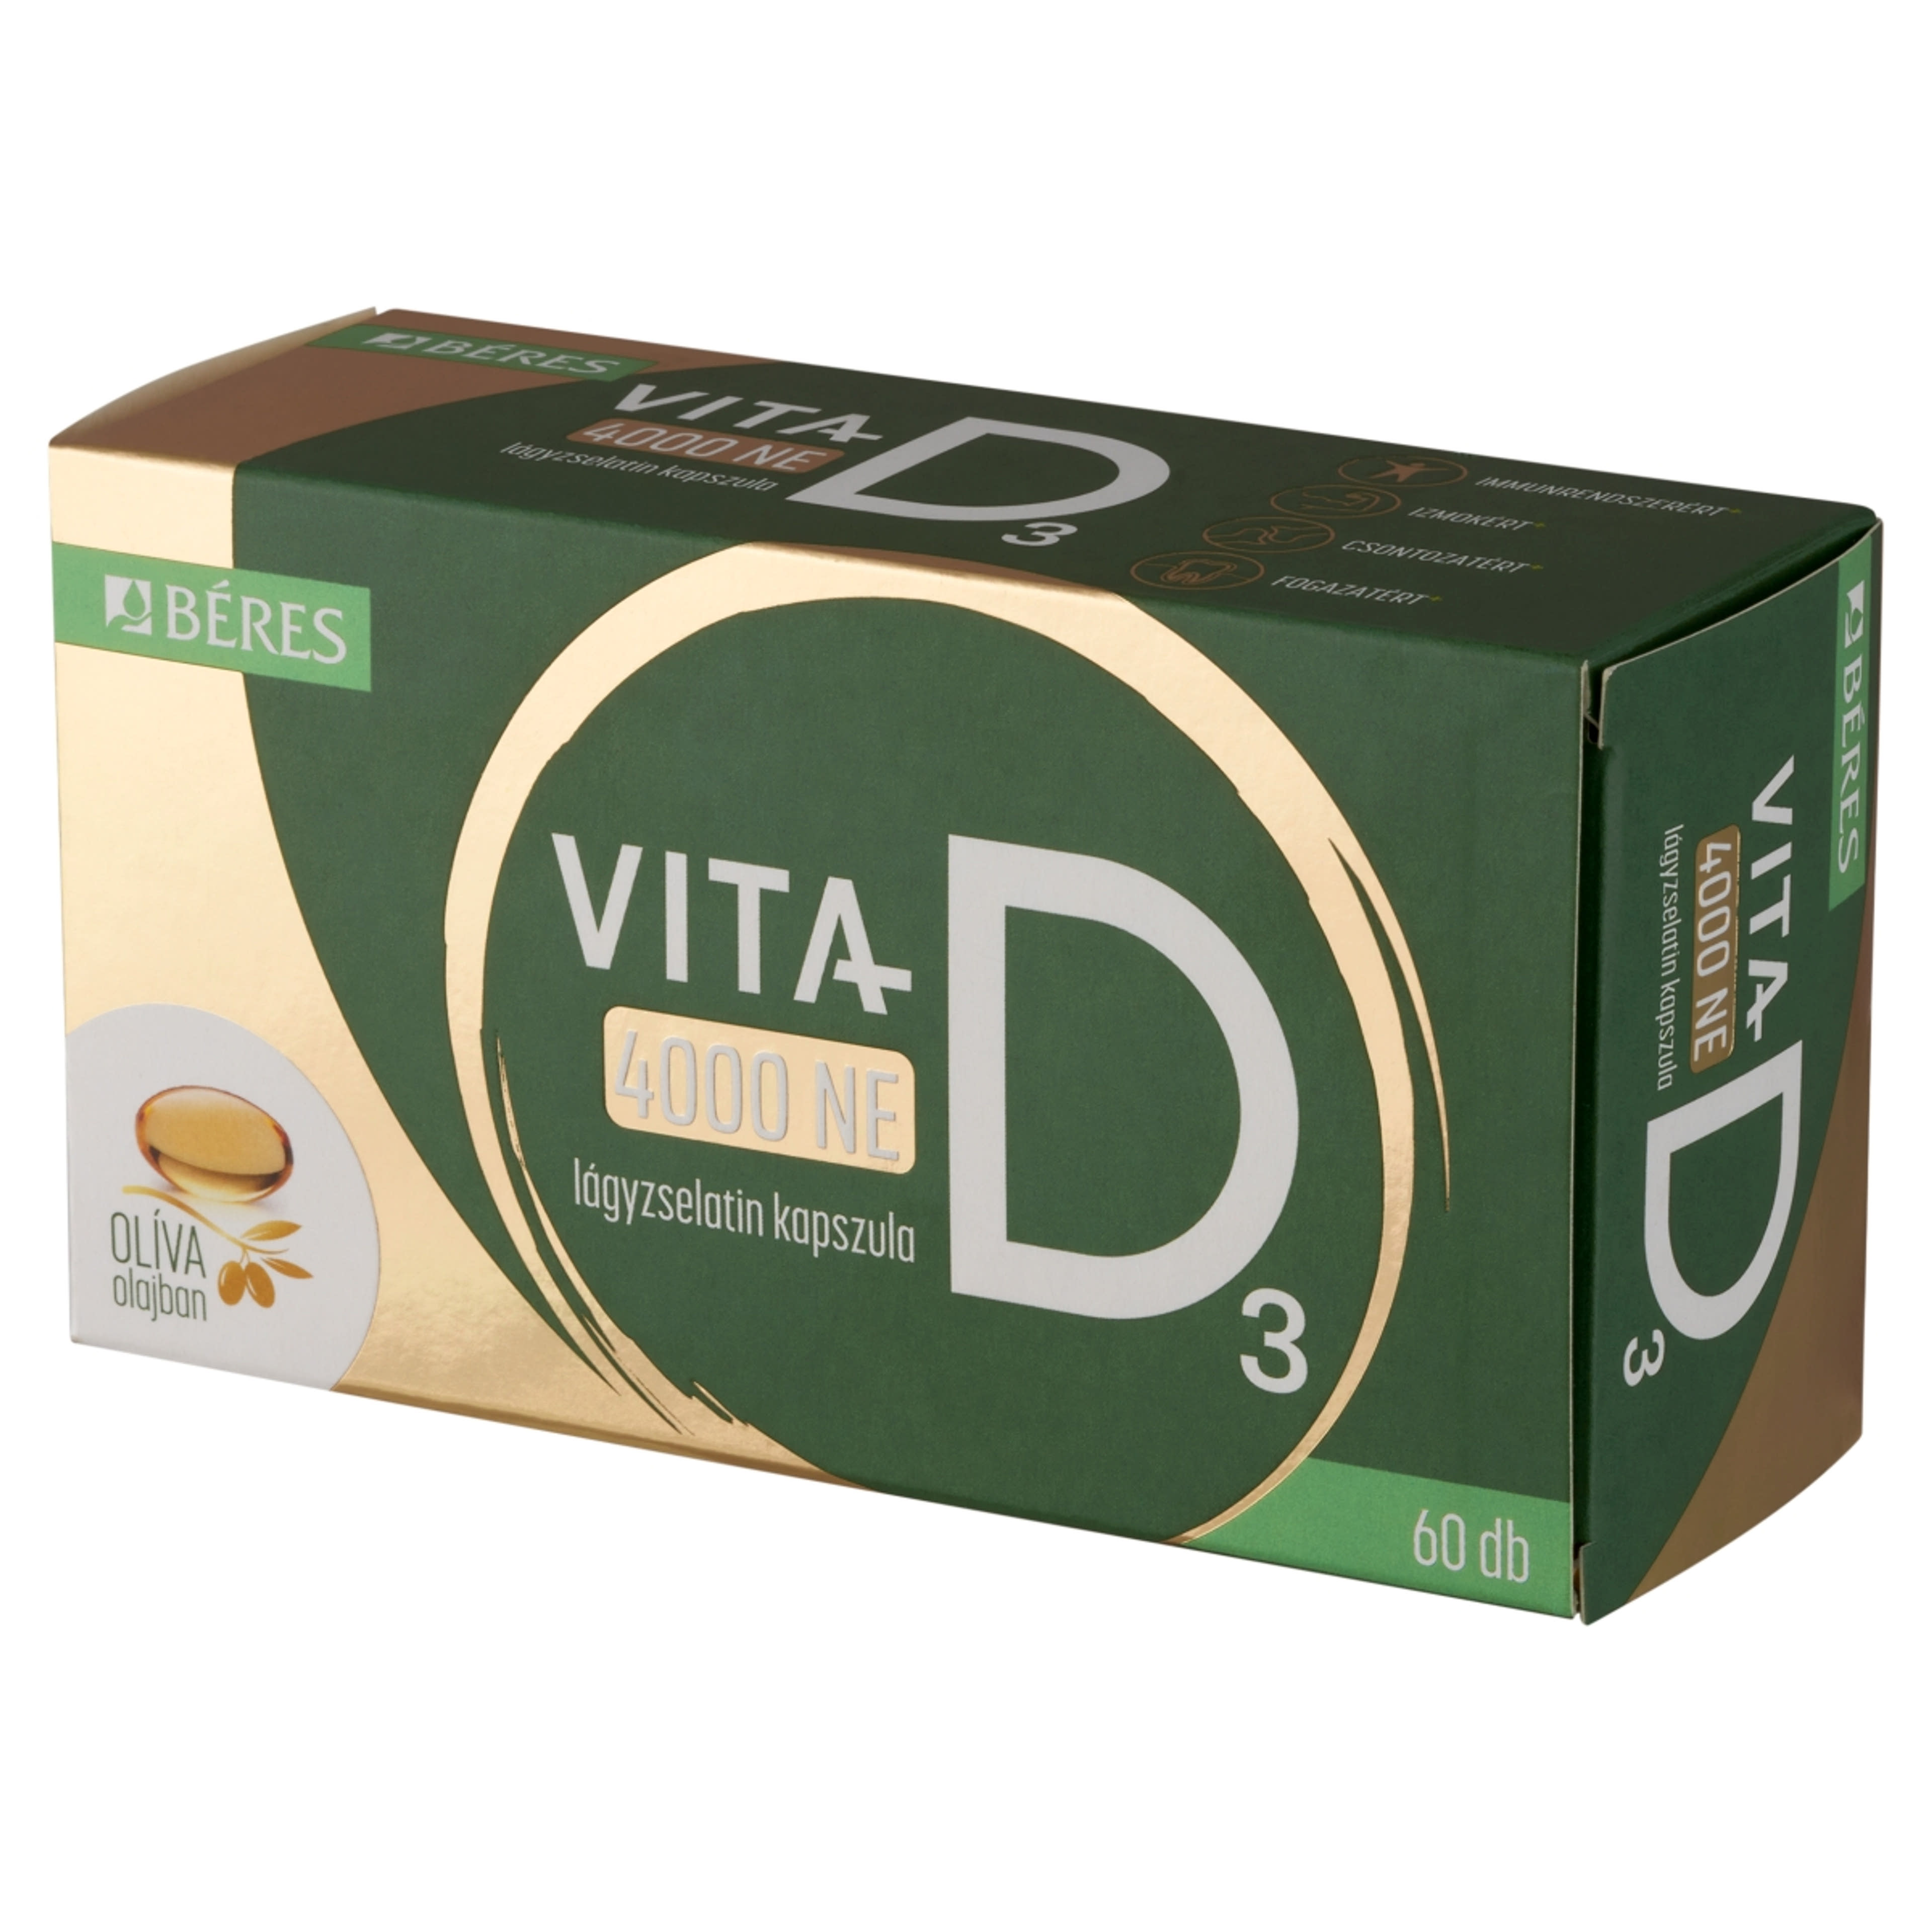 Béres Vita-D 4000 NE étrend-kiegészítő lágyzselatin kapszula - 60 db-2